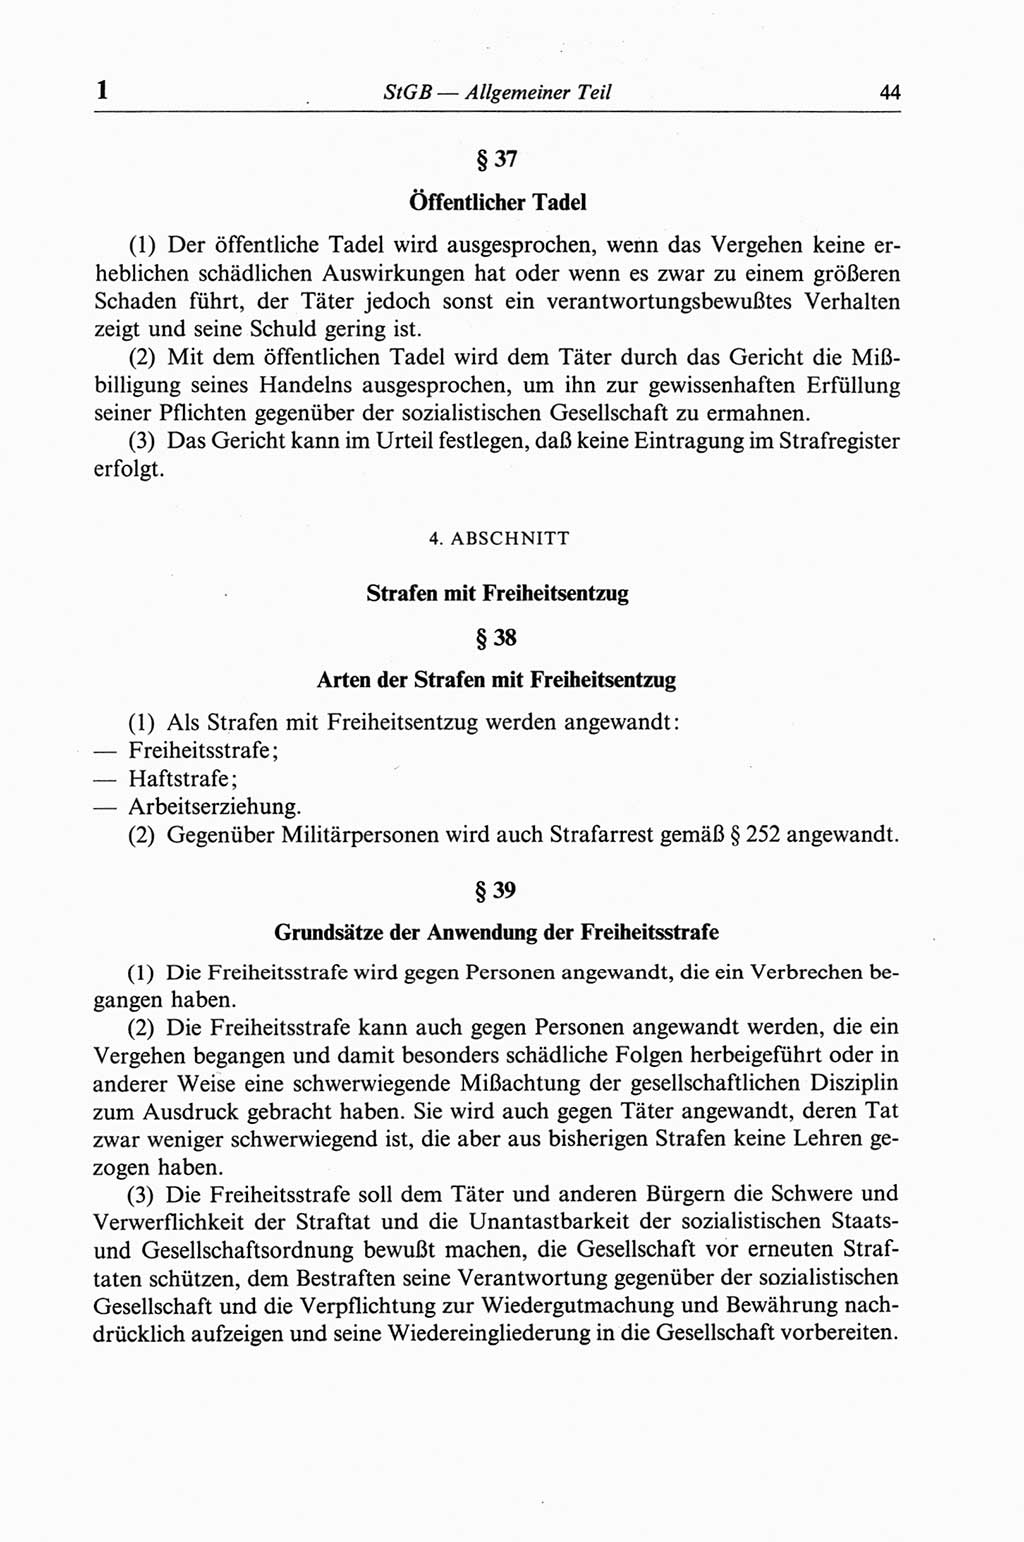 Strafgesetzbuch (StGB) der Deutschen Demokratischen Republik (DDR) und angrenzende Gesetze und Bestimmungen 1968, Seite 44 (StGB Ges. Best. DDR 1968, S. 44)